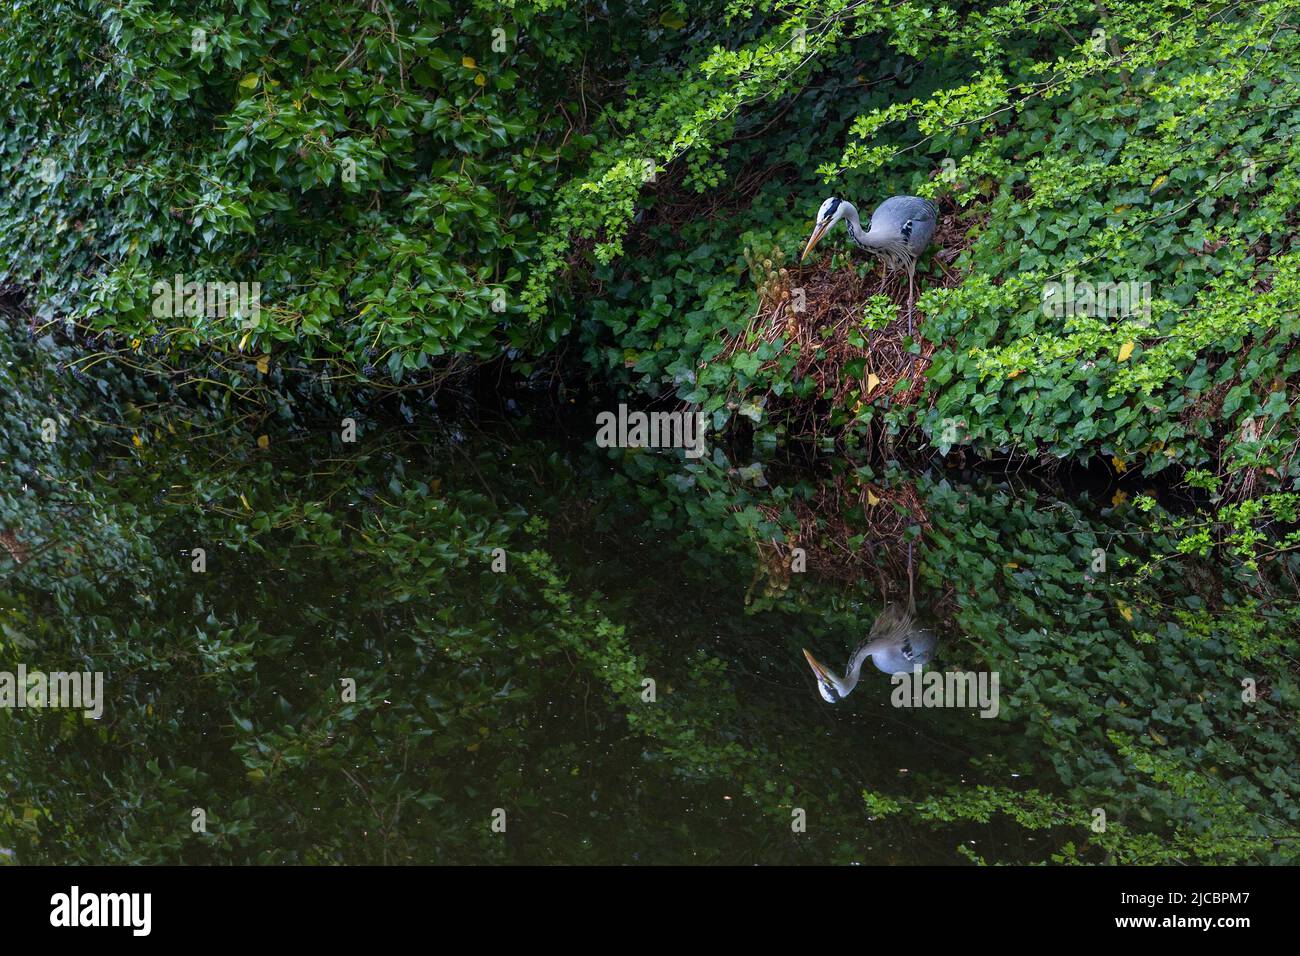 Ein Reiher, der in Stille auf einem Flussufer steht und geduldig darauf wartet, dass ein Fisch in Sicht kommt.Natur und Tierwelt oder Geduld, Tarnkonzept. Stockfoto